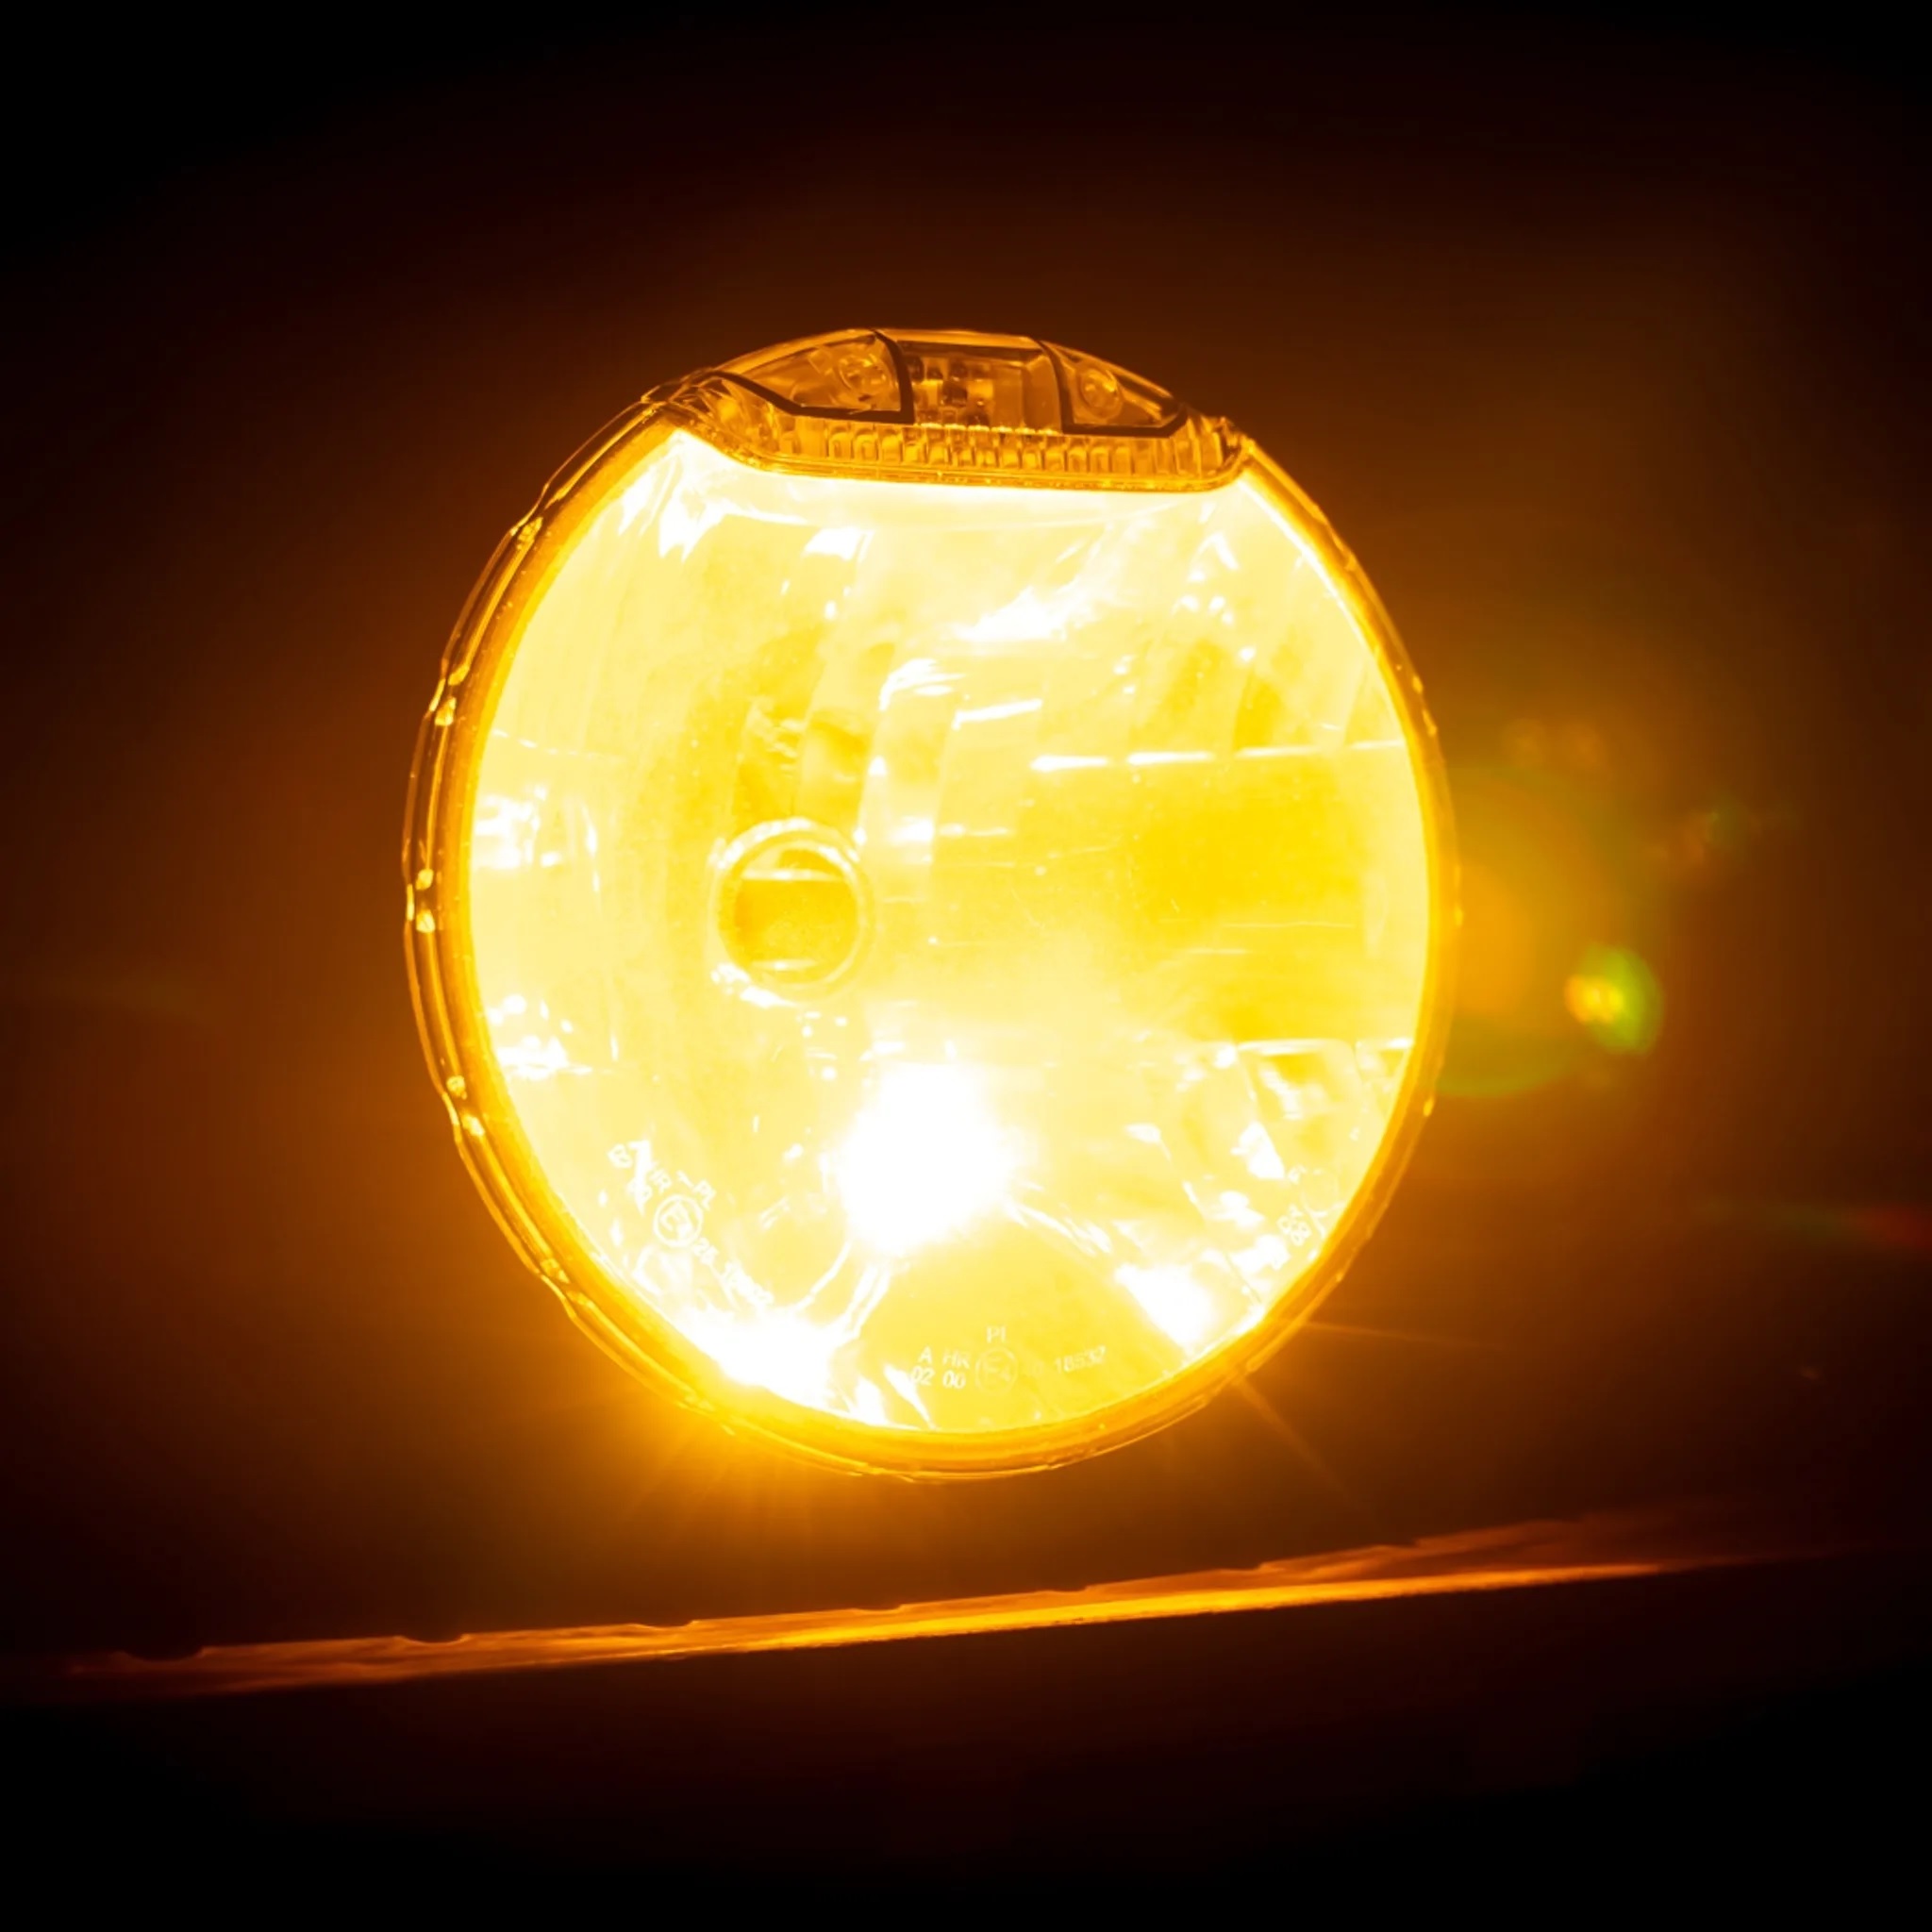 LED Strobo-Blitzer für die Montage in Scheinwerfern, versch. Farben, LED  Blitzer, Signal- und Kennleuchten, Fahrzeugbeleuchtung, ONLINESHOP